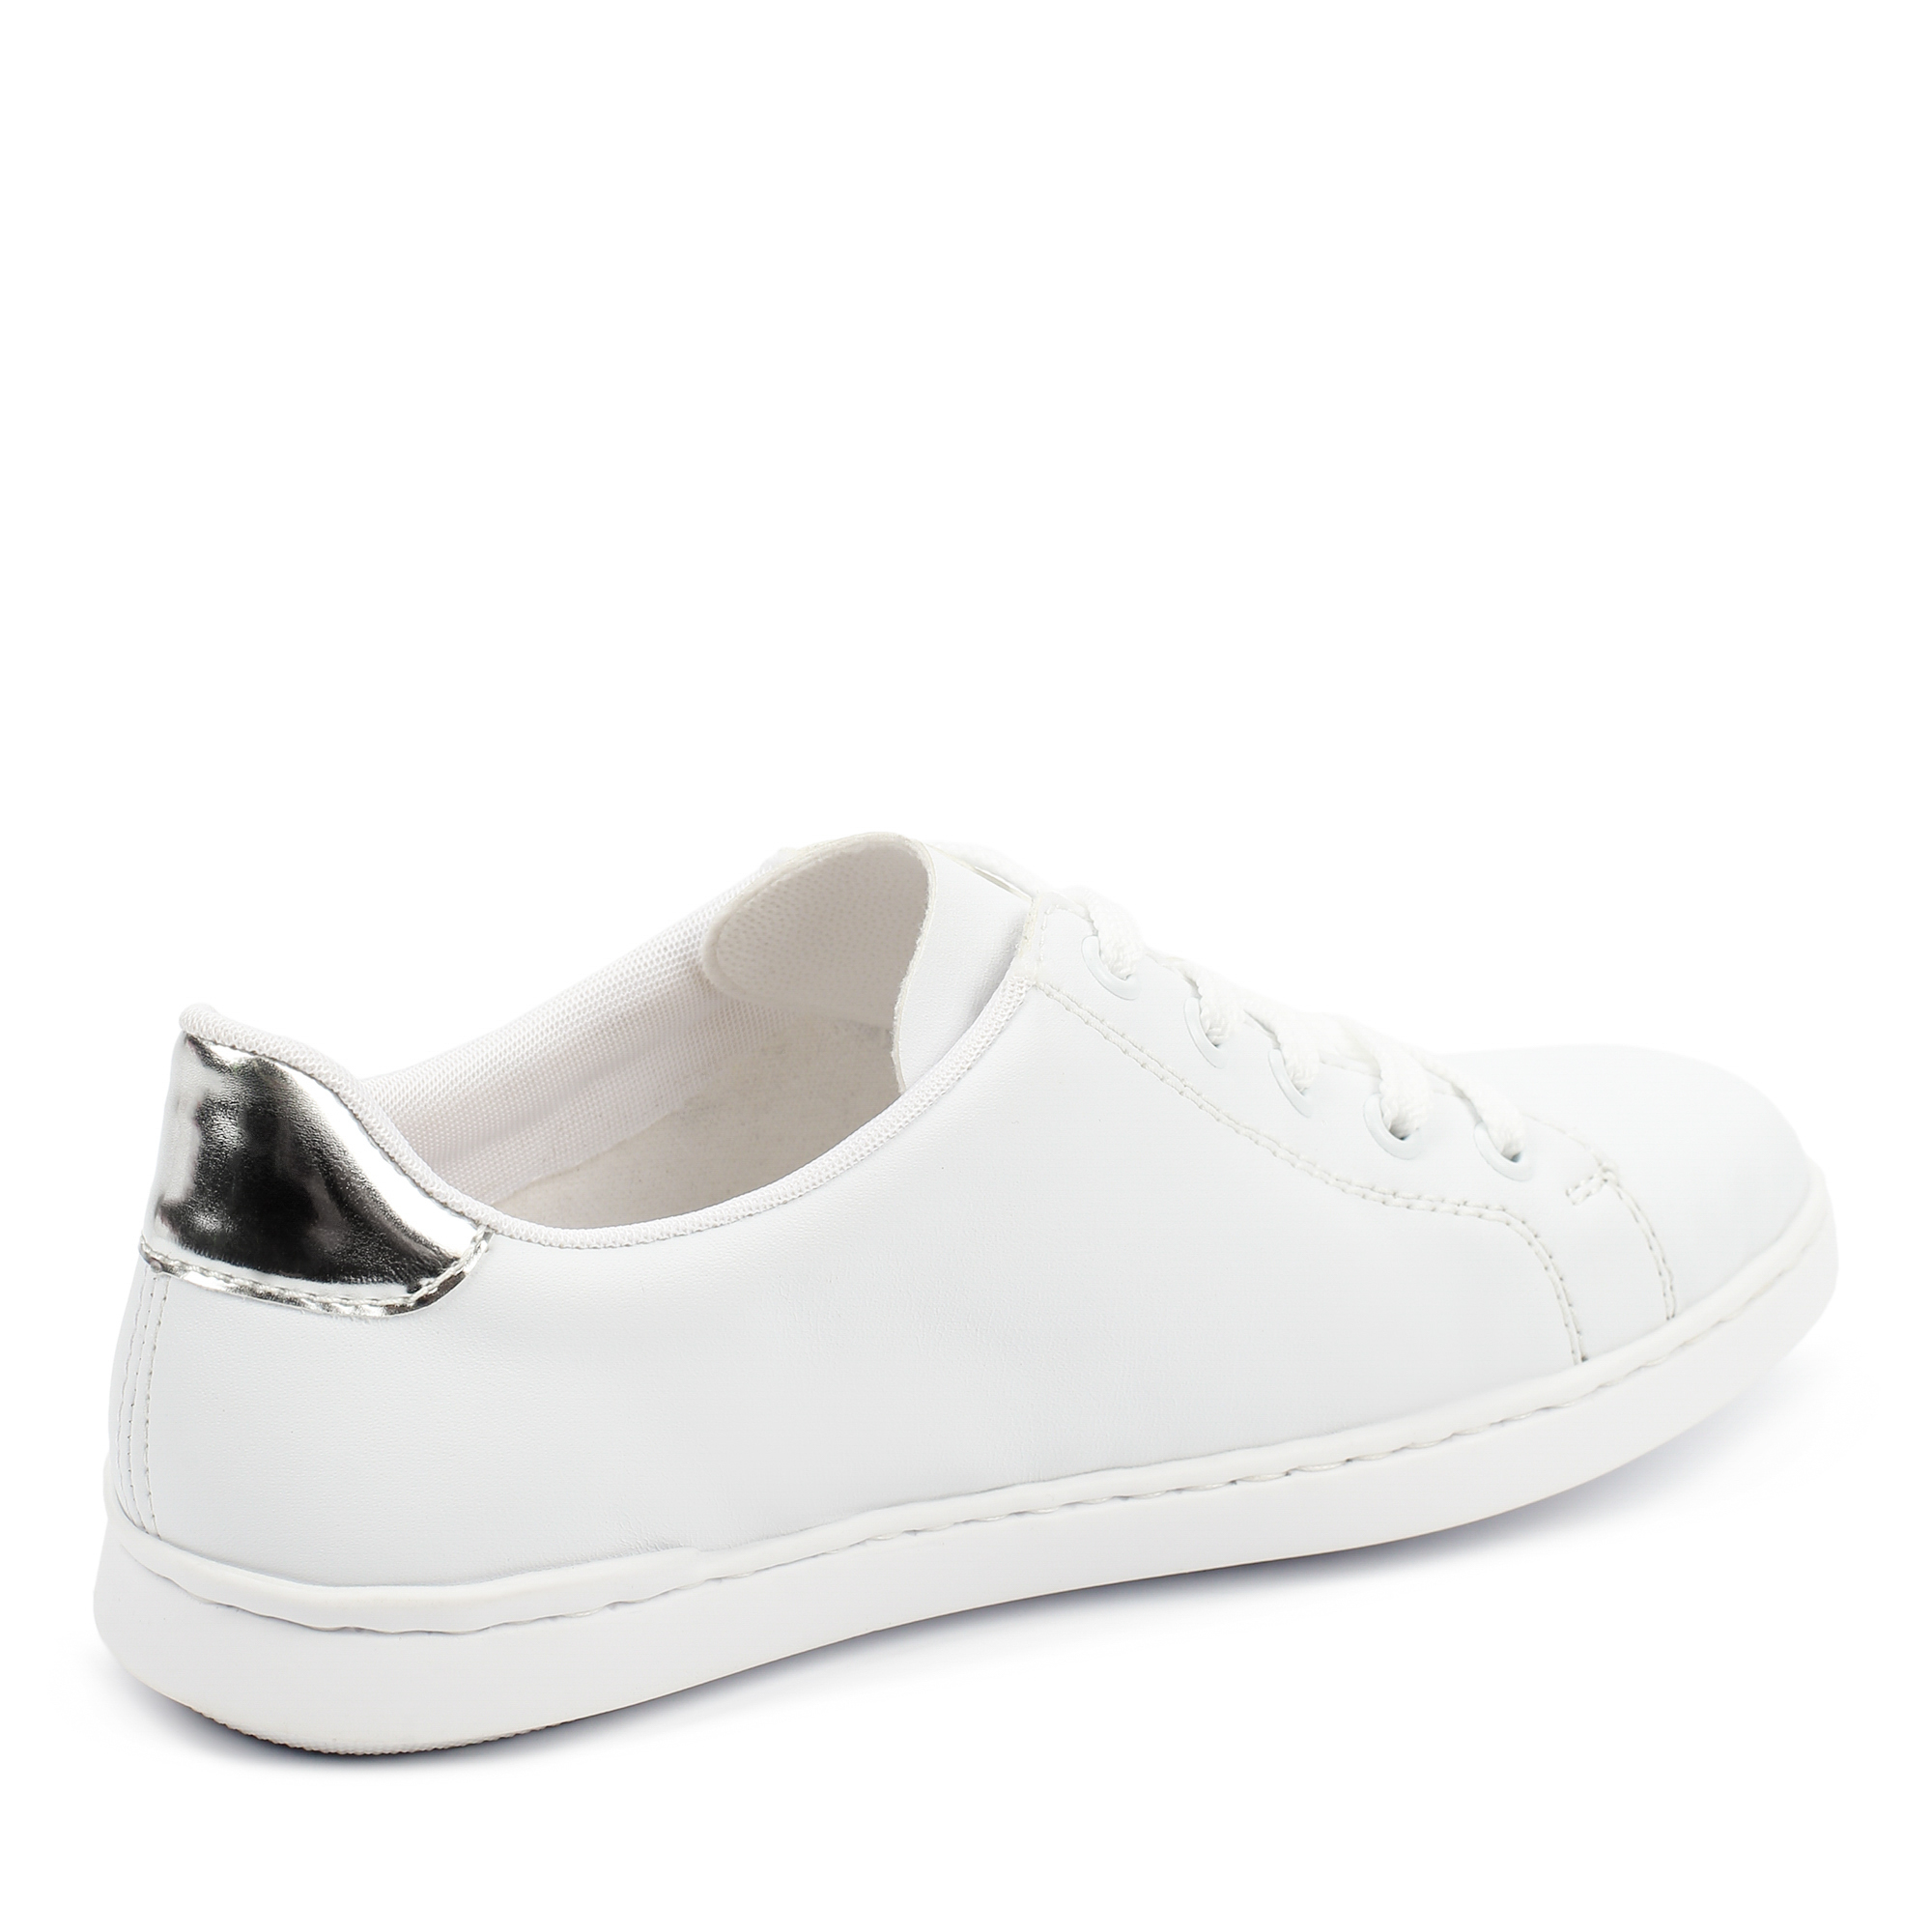 Туфли Rieker L2713-80, цвет белый, размер 38 - фото 3